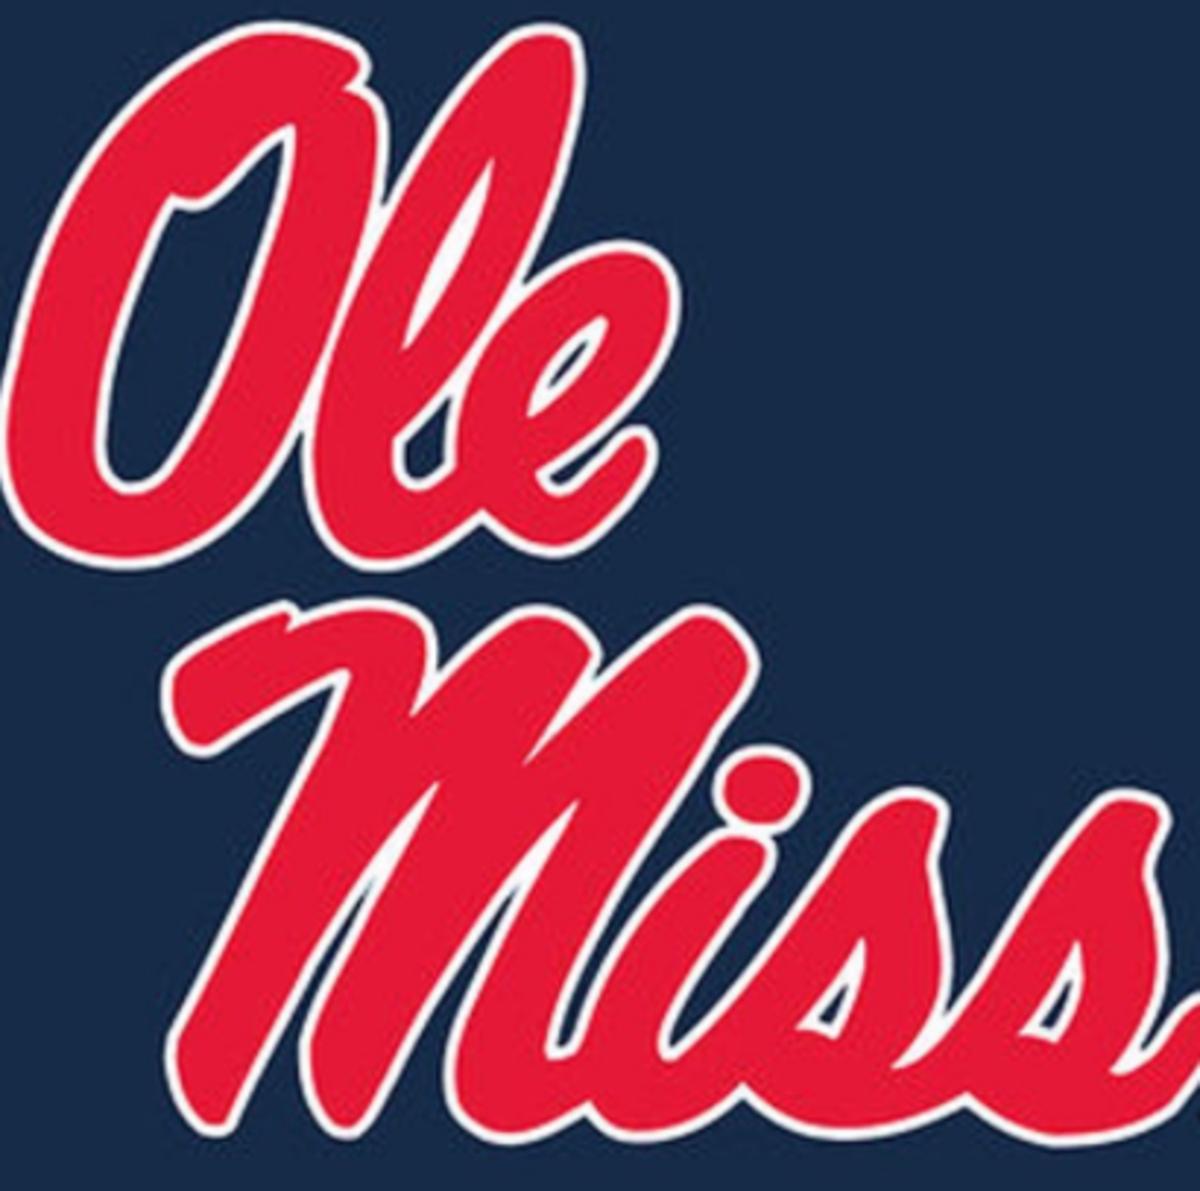 Ole Miss football logo